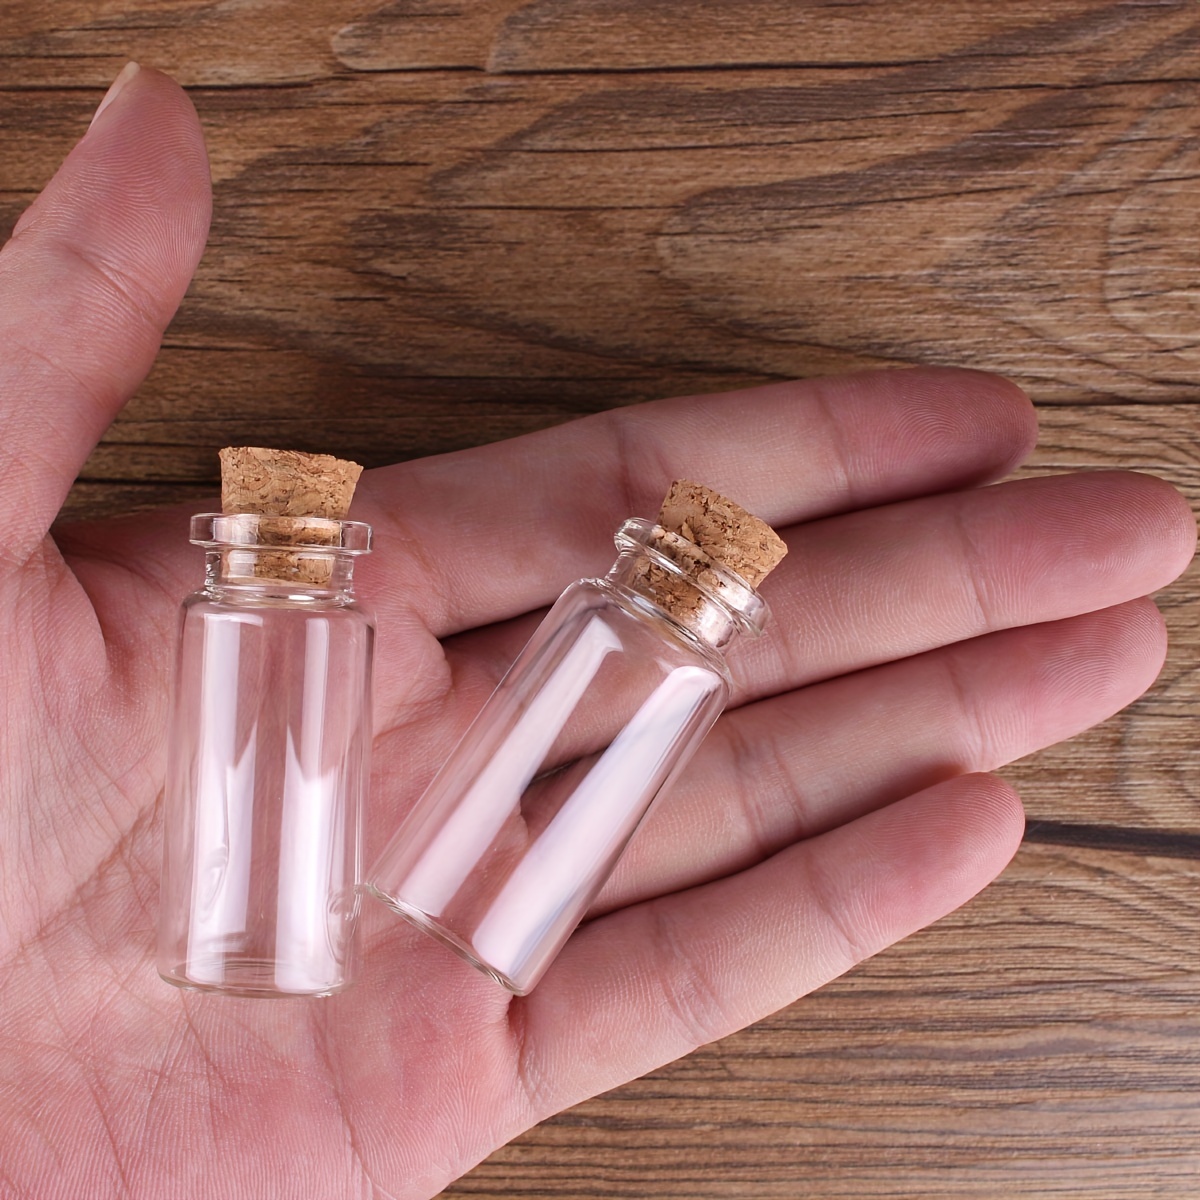 Warmhm 45 Stk Mini-glasflasche Mini-wunschflasche Laborprobenbehälter  Mini-flasche Aus Farbigem Glas Nachricht Glasflasche  Probenverschlussflaschen